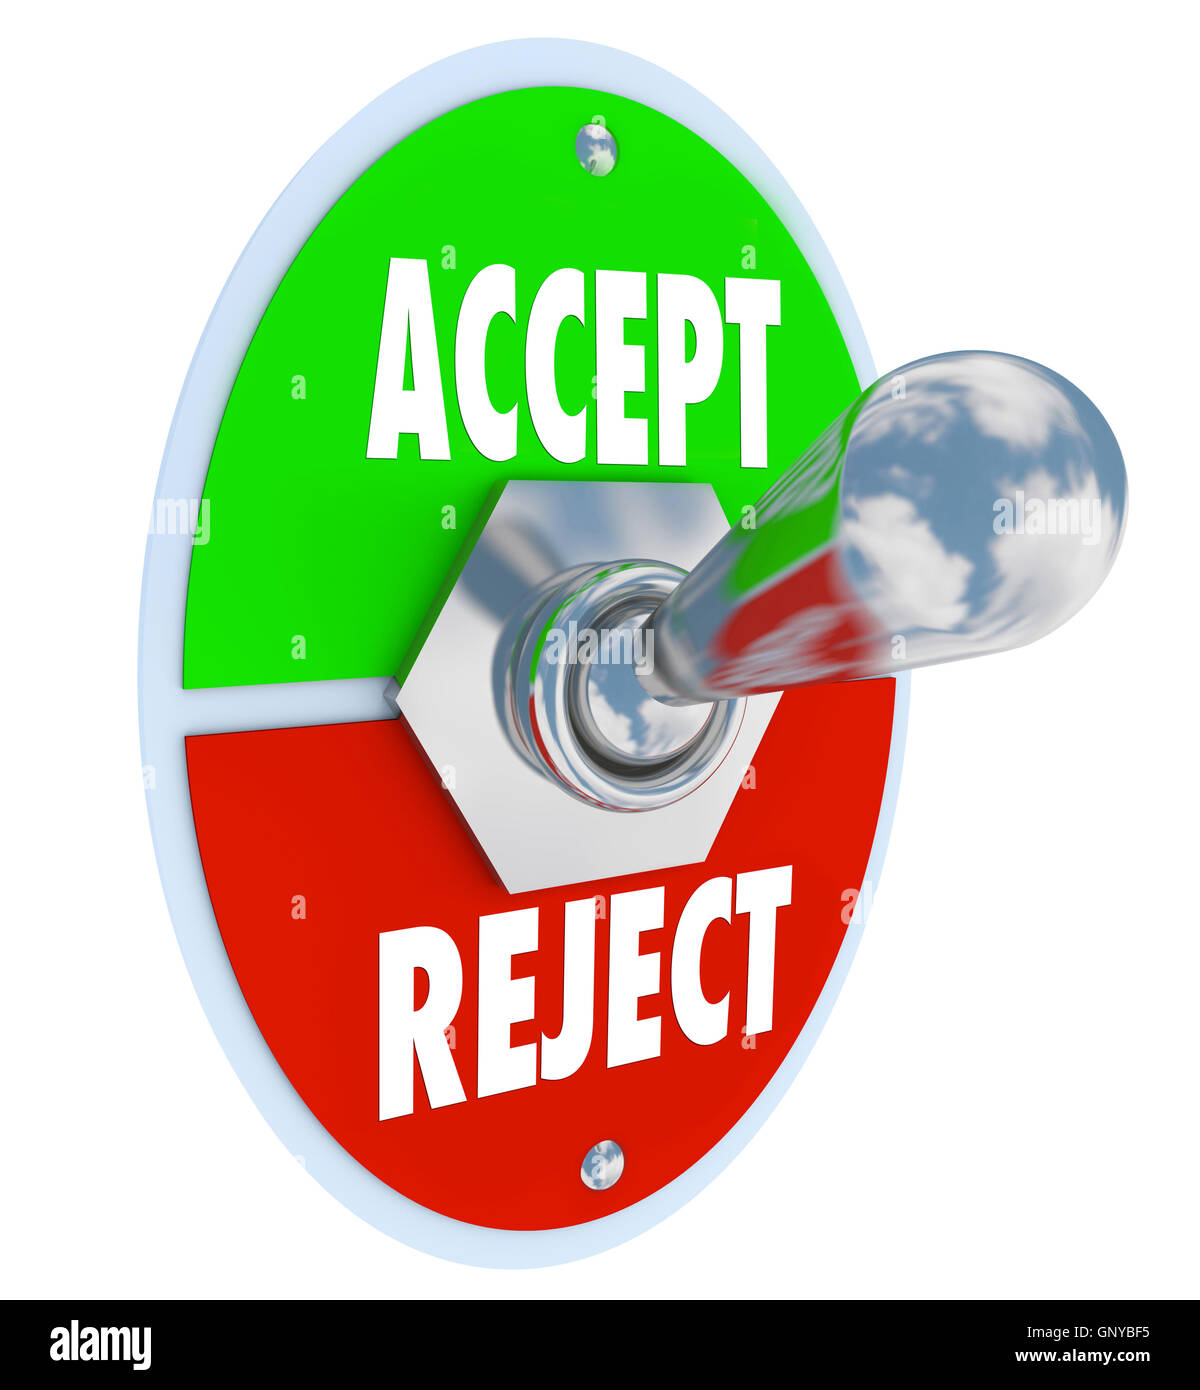 Accepter vs rejeter l'acceptation ou le rejet de l'interrupteur Banque D'Images